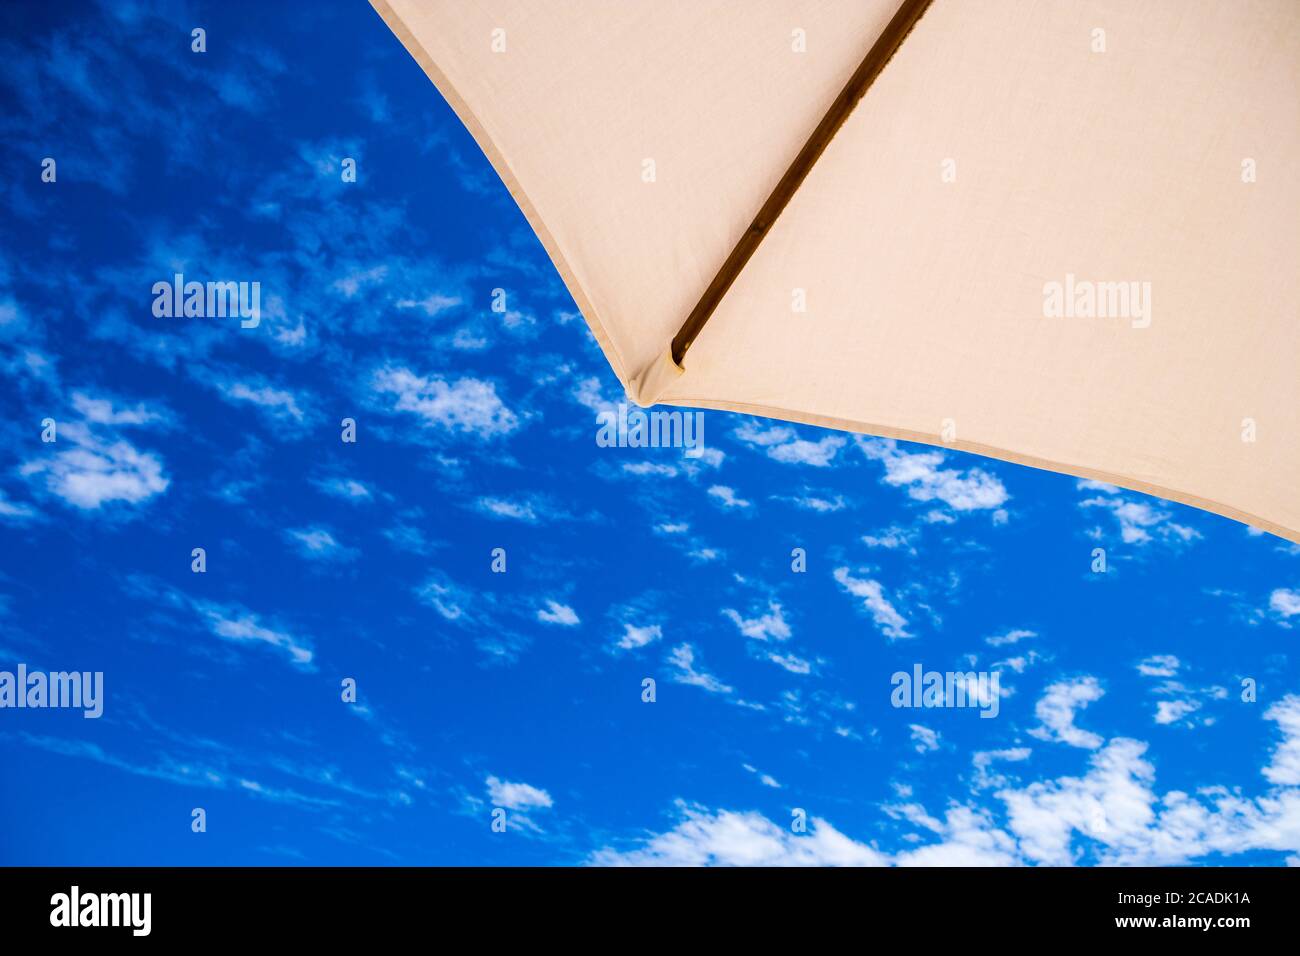 Ein Sonnenschirm Ecke gegen einen blauen Himmel mit Wölkchen Stockfoto